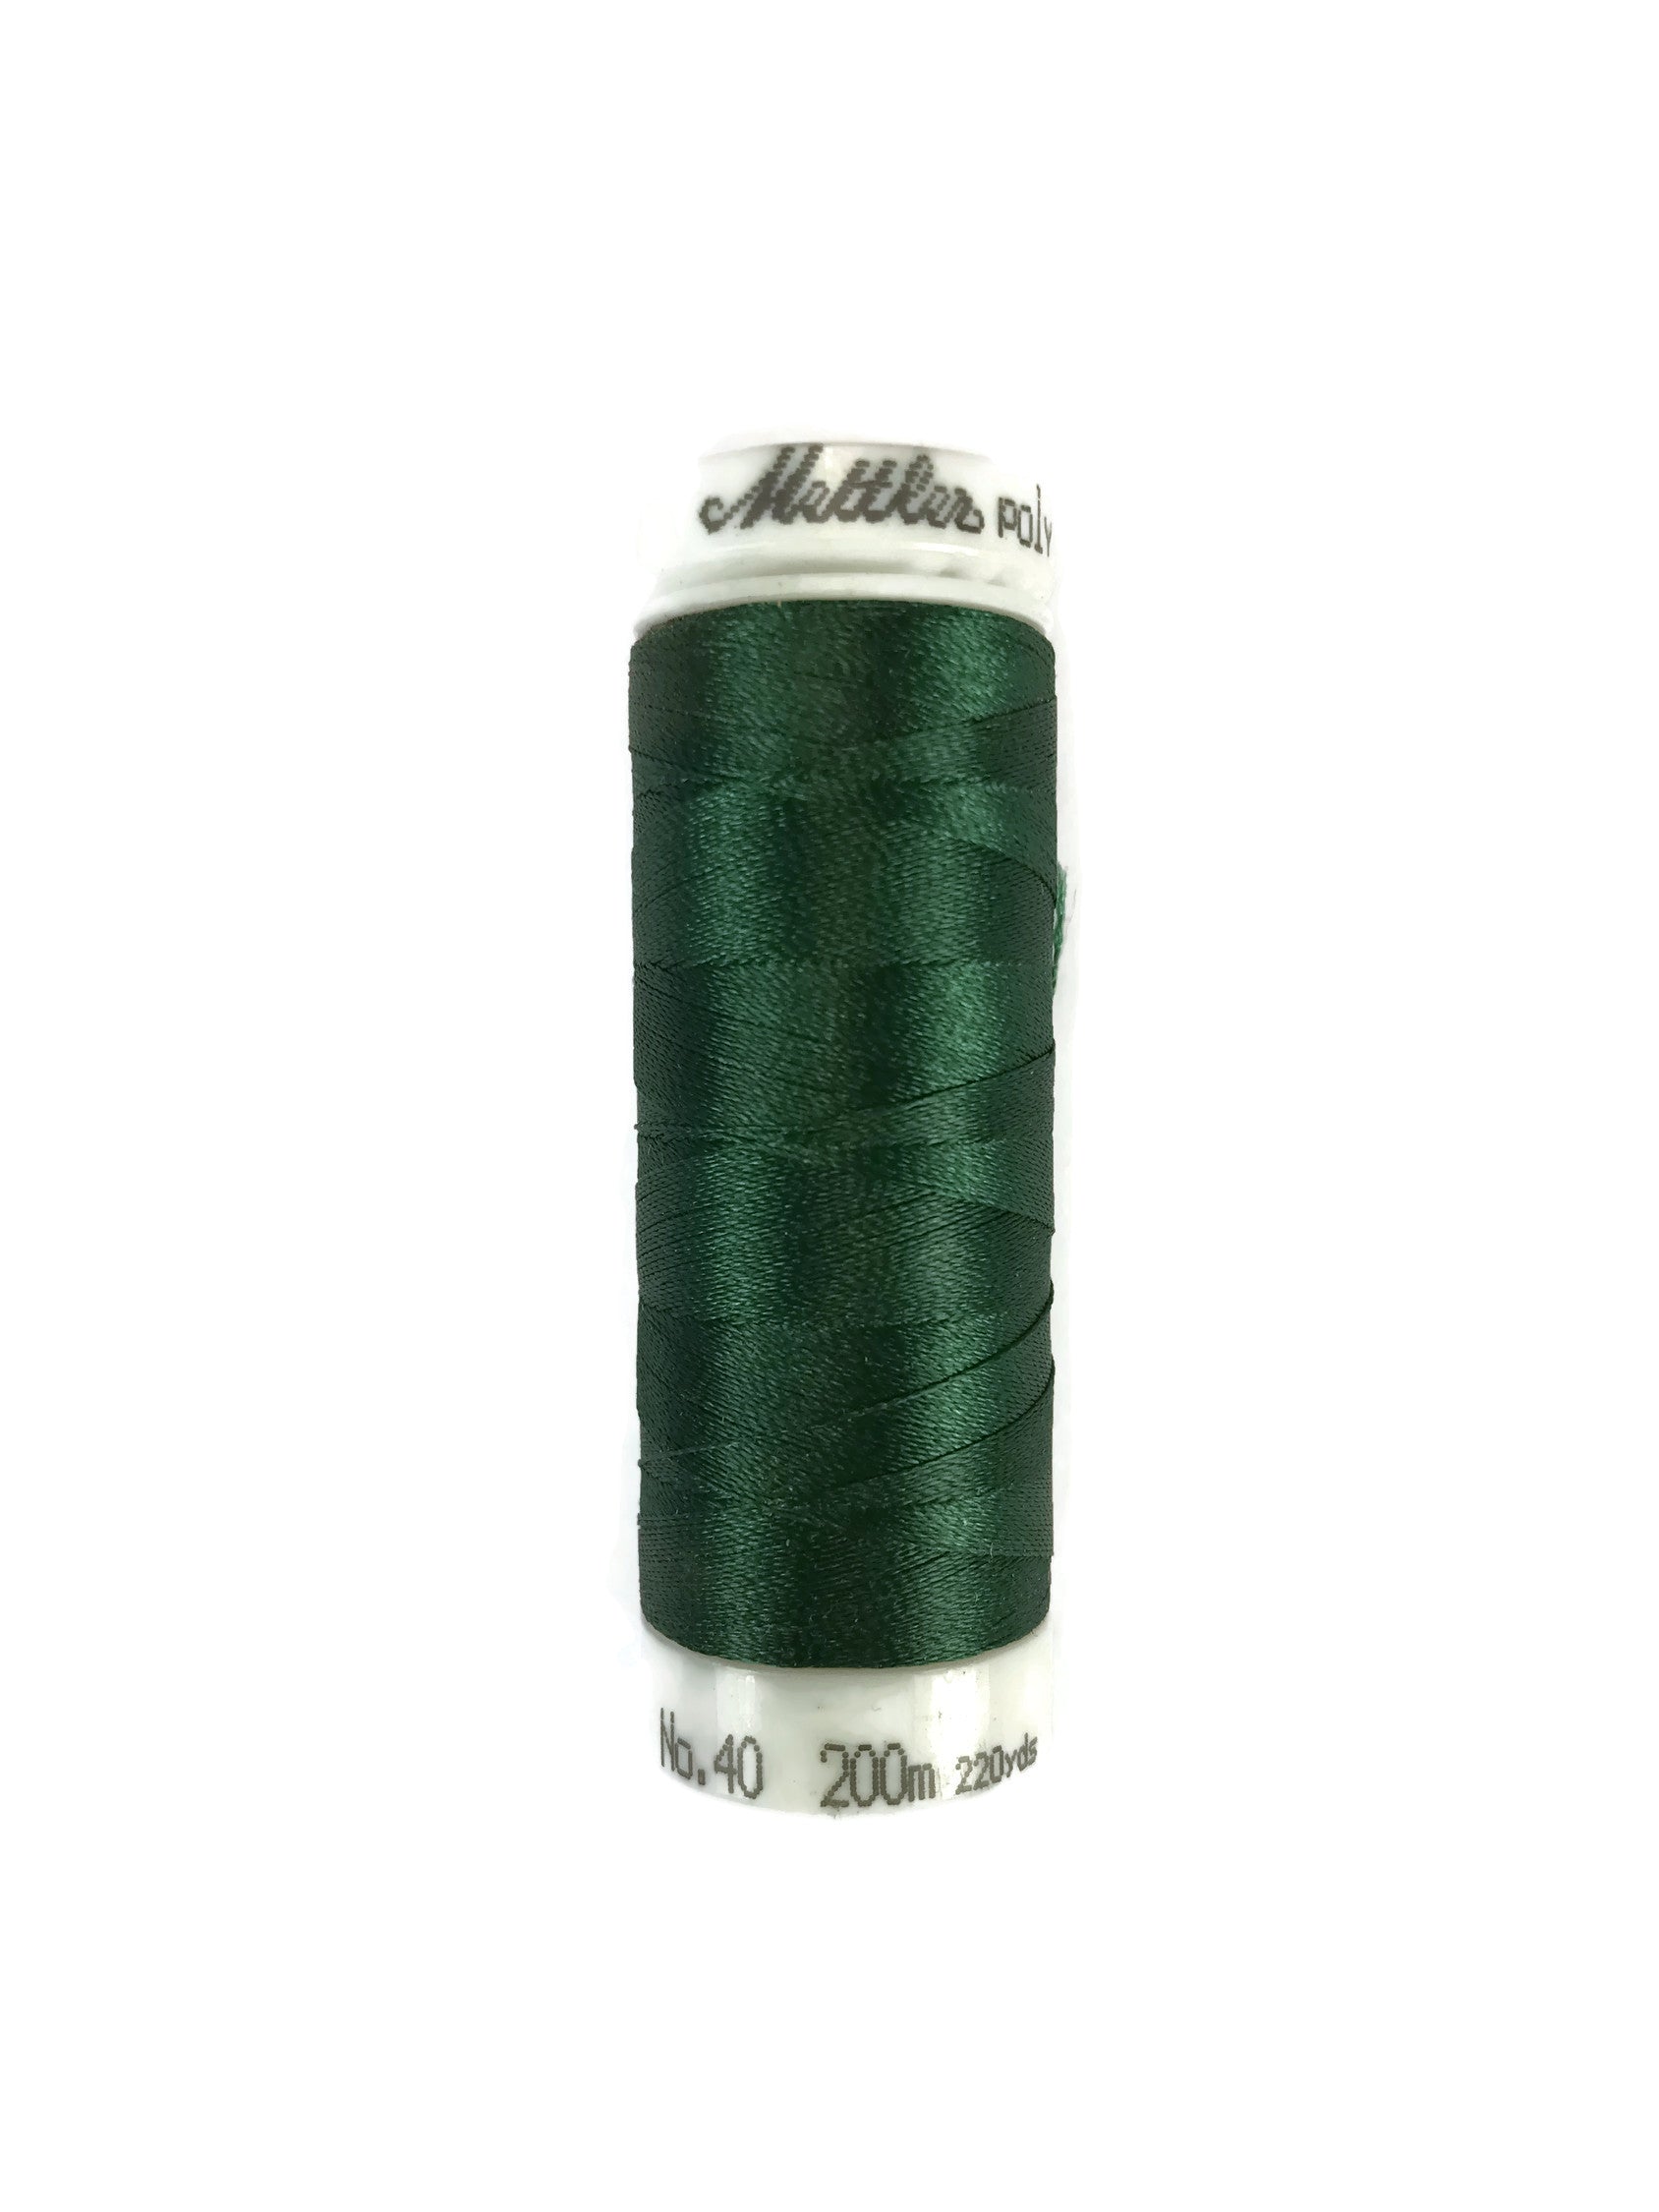 Mettler Poly Sheen Thread Colour 5324 Bright Green